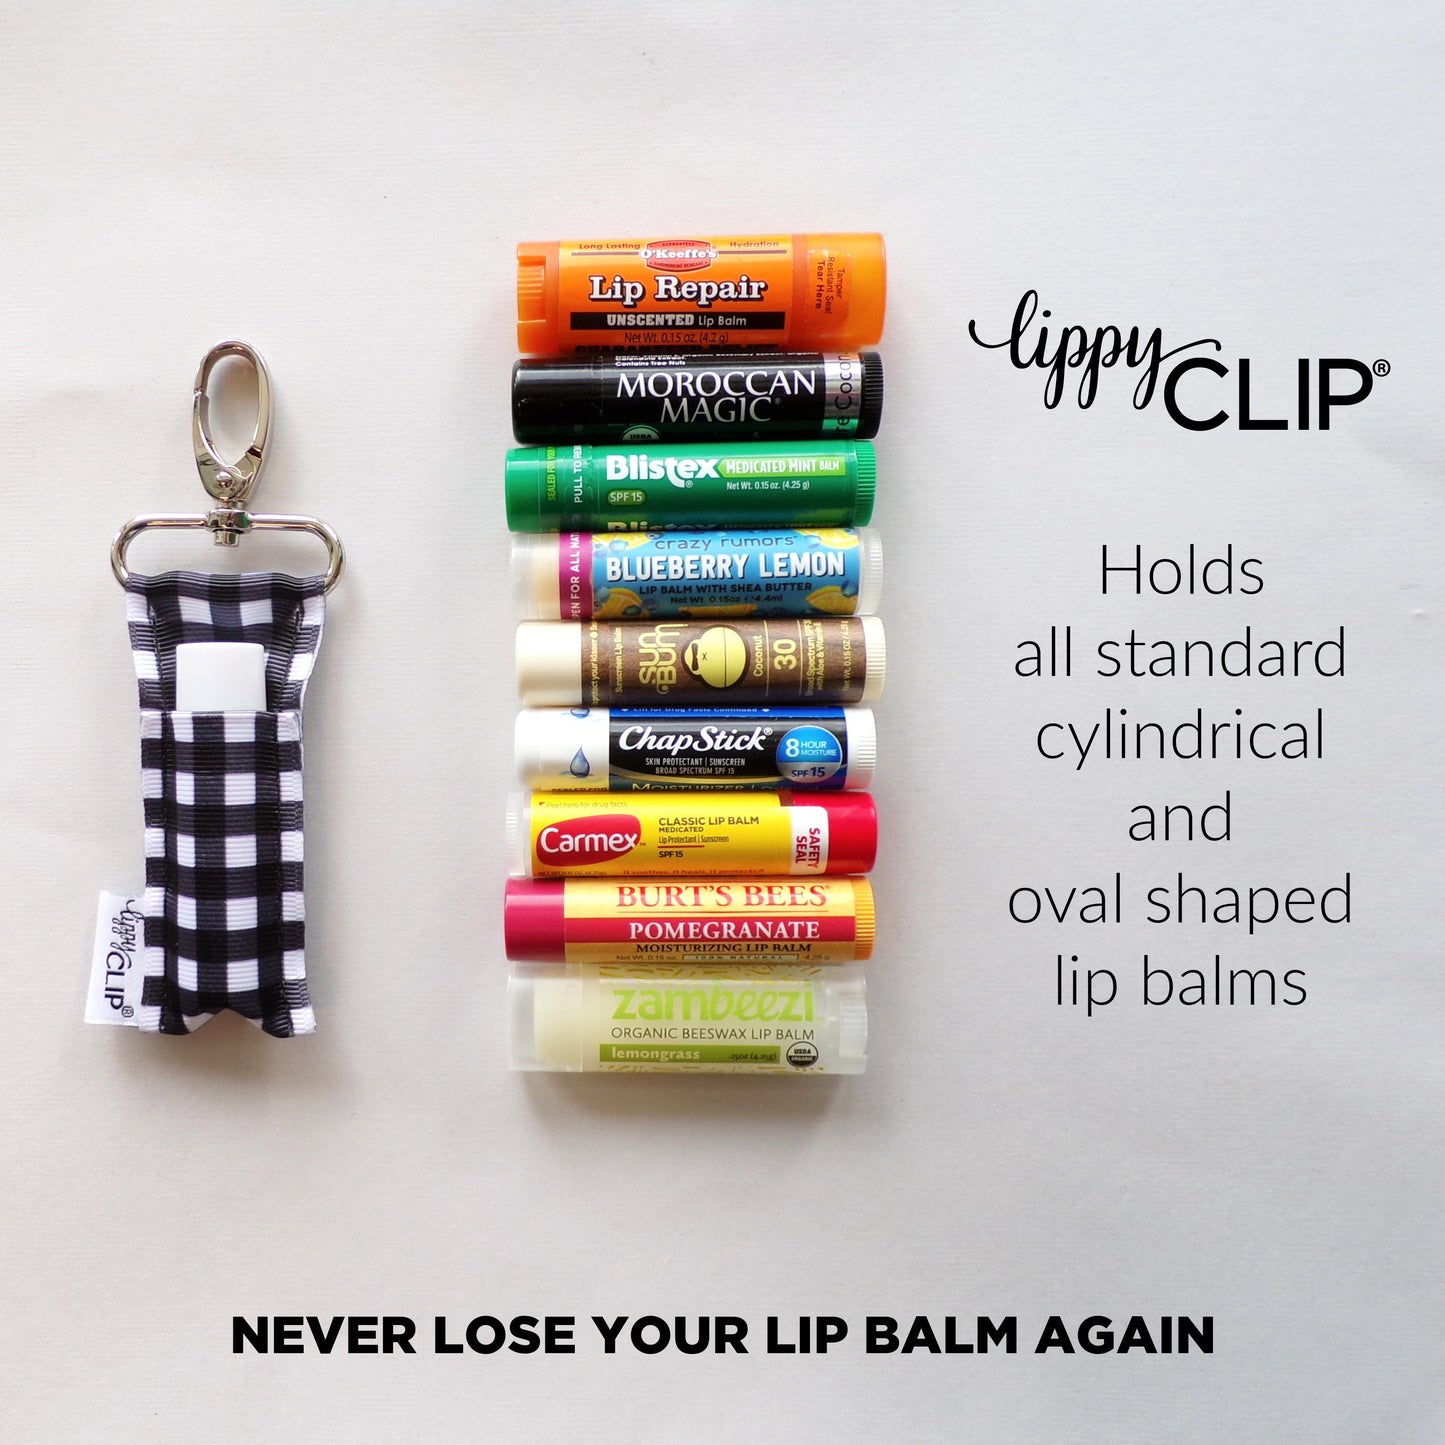 Home Run LippyClip® Lip Balm Holder